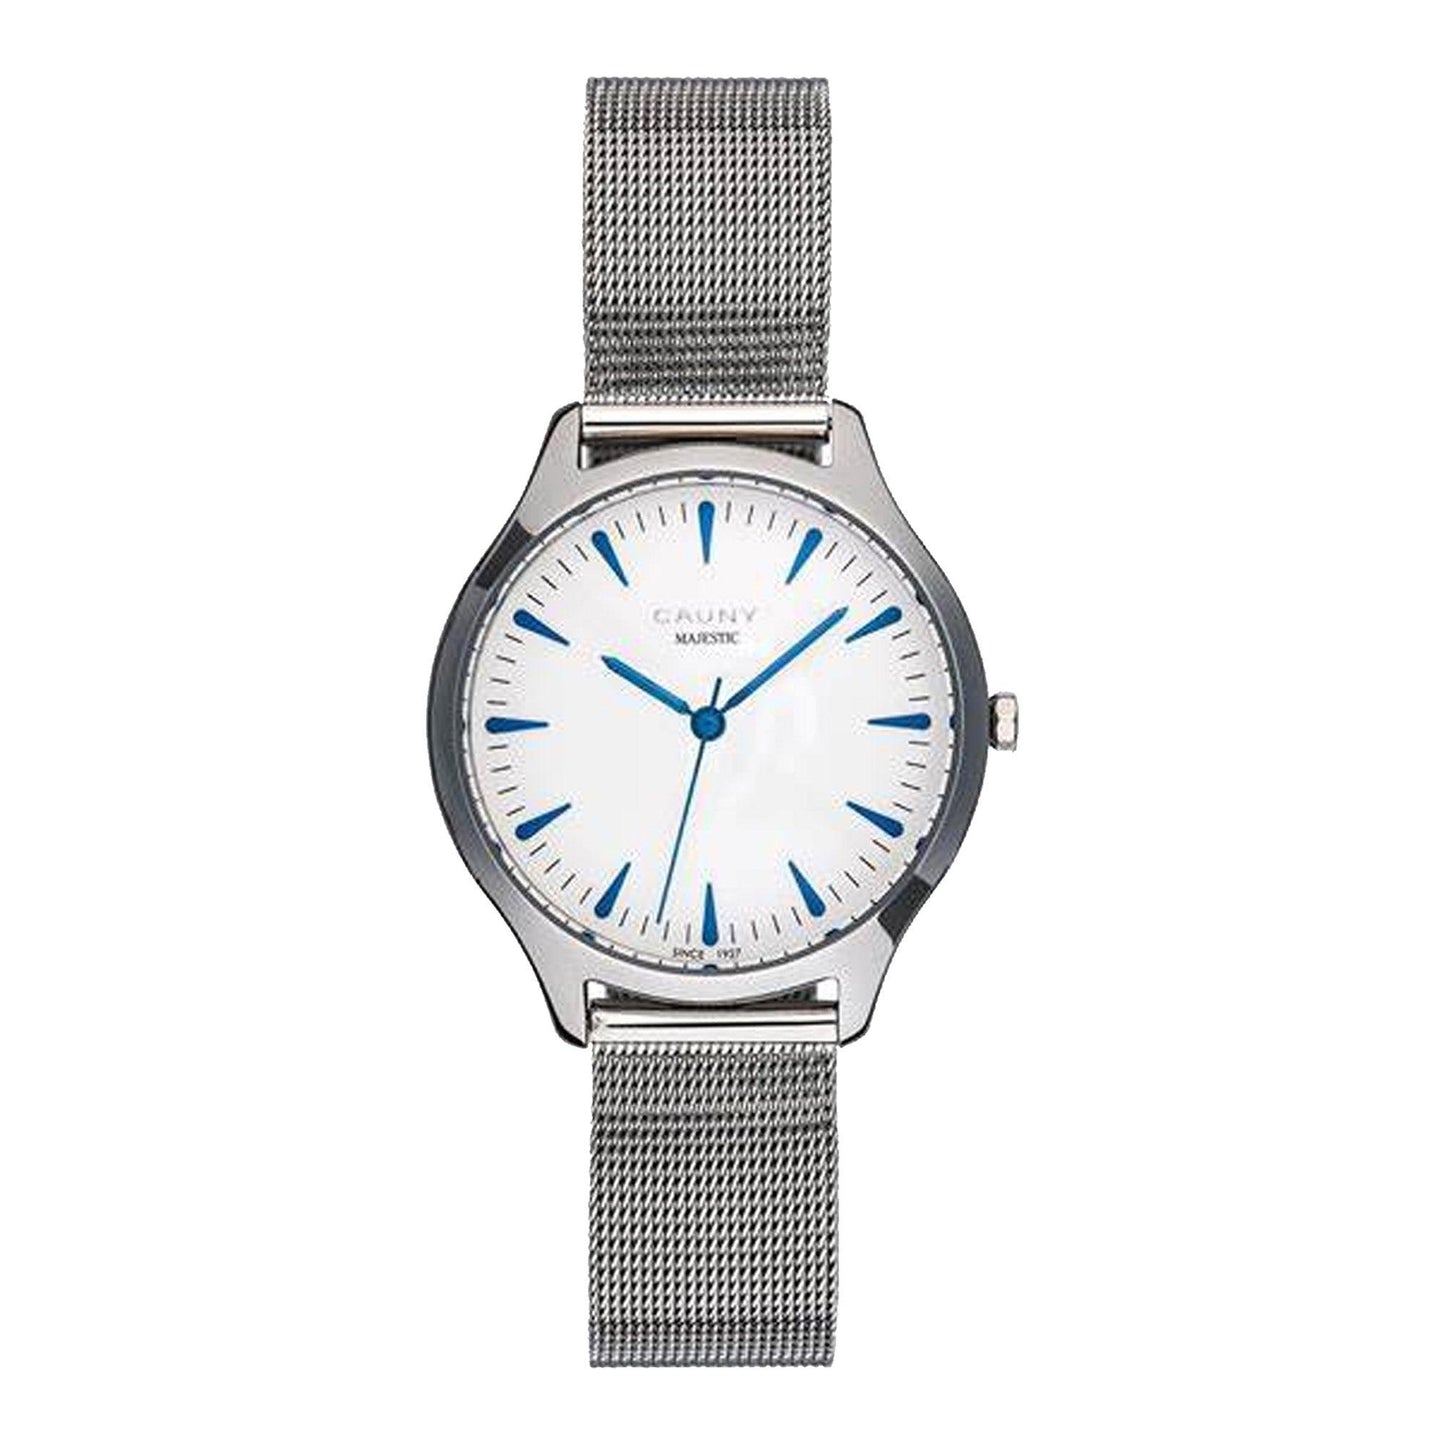 Cauny Majestic CMJ007 orologio uomo al quarzo - Kechiq Concept Boutique